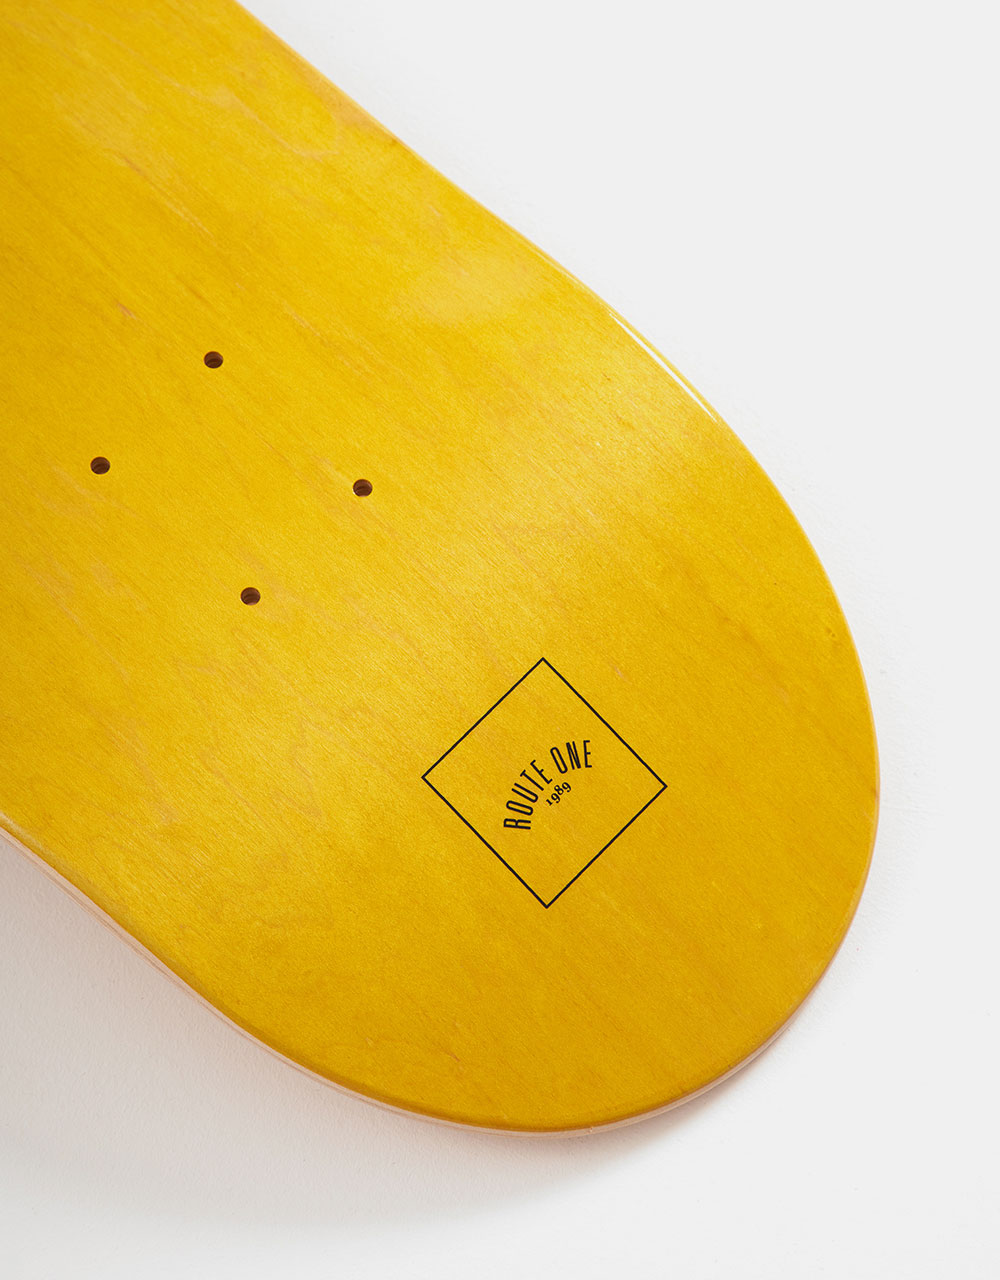 Route One Mini Logo 'OG Shape' Skateboard Deck - Yellow/Black